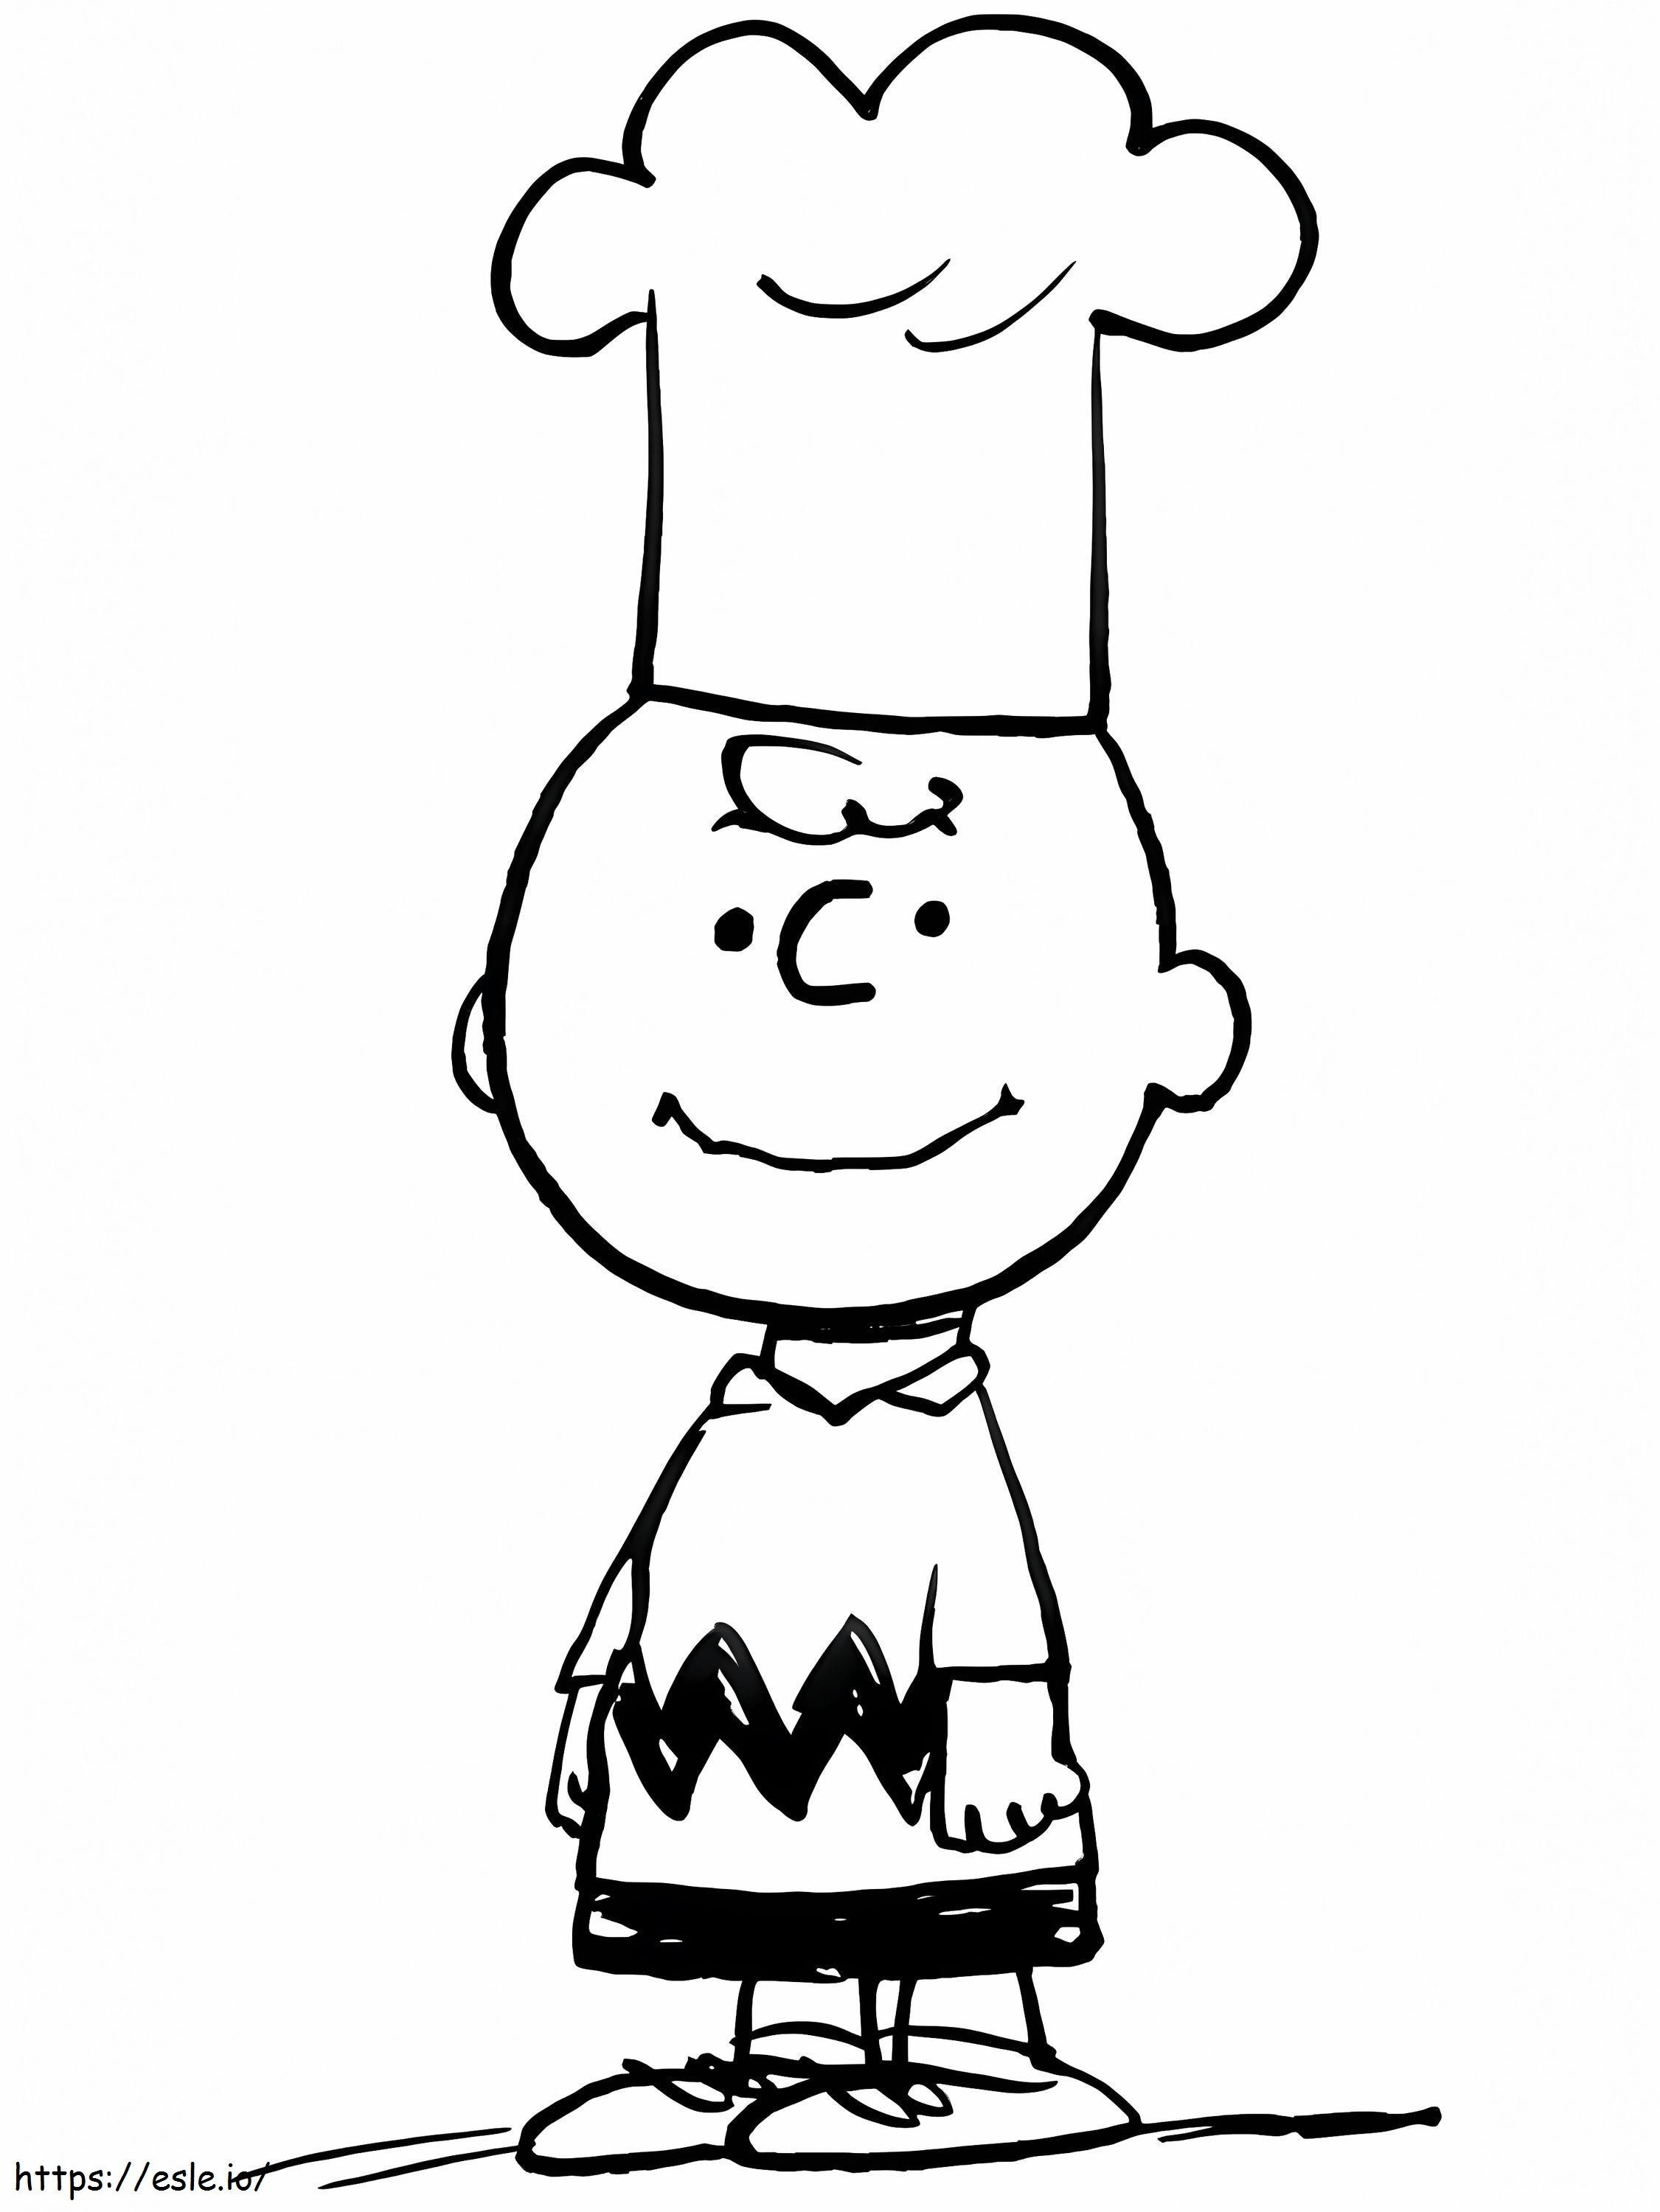 Coloriage Charlie Brown Cuisinier à imprimer dessin